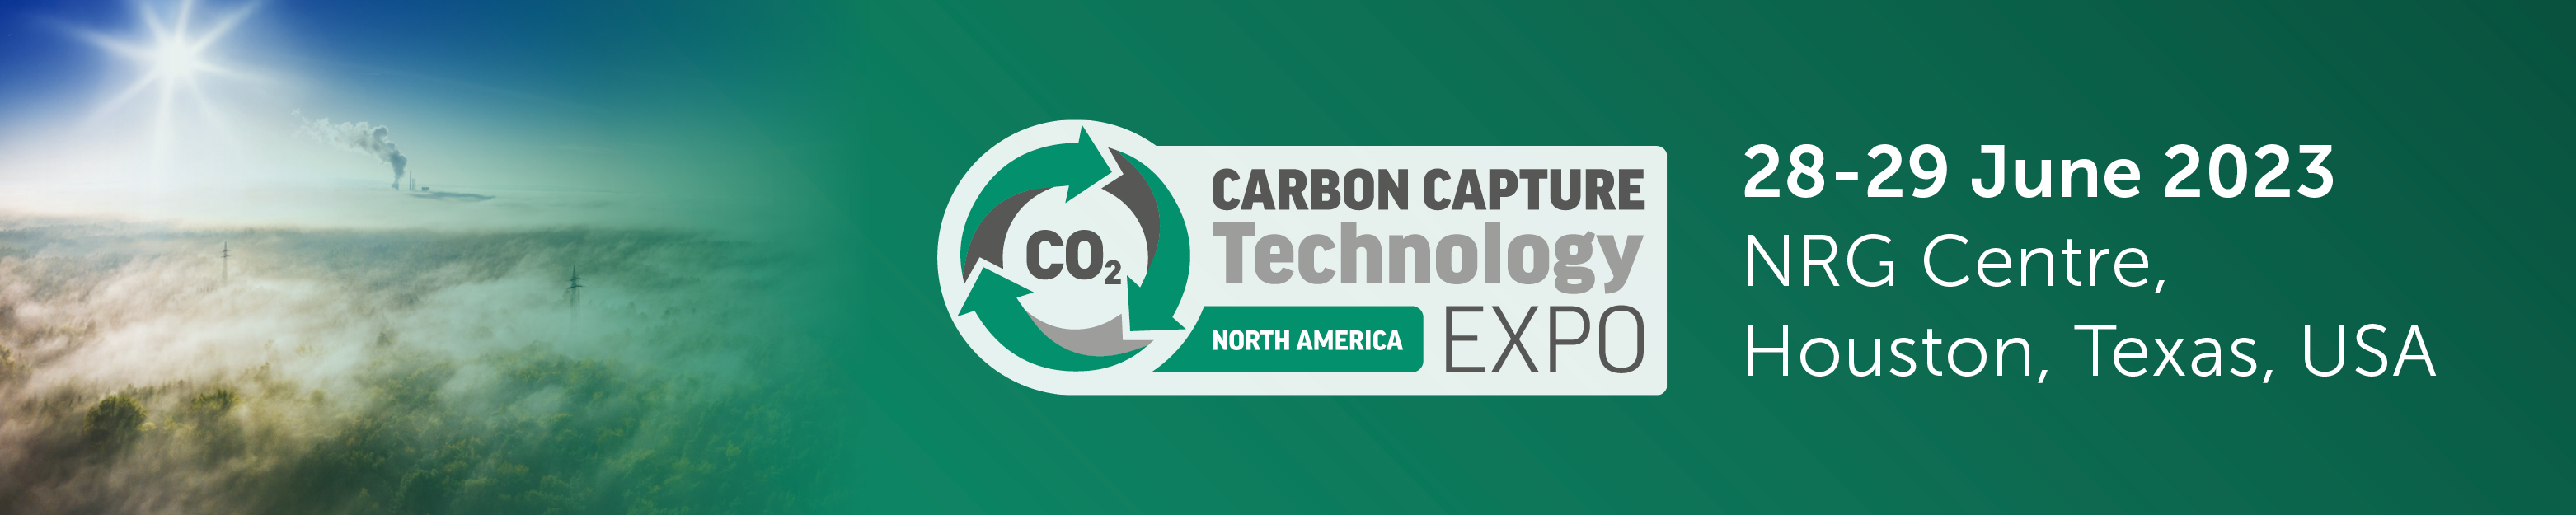 hydrogen carbon capture expo